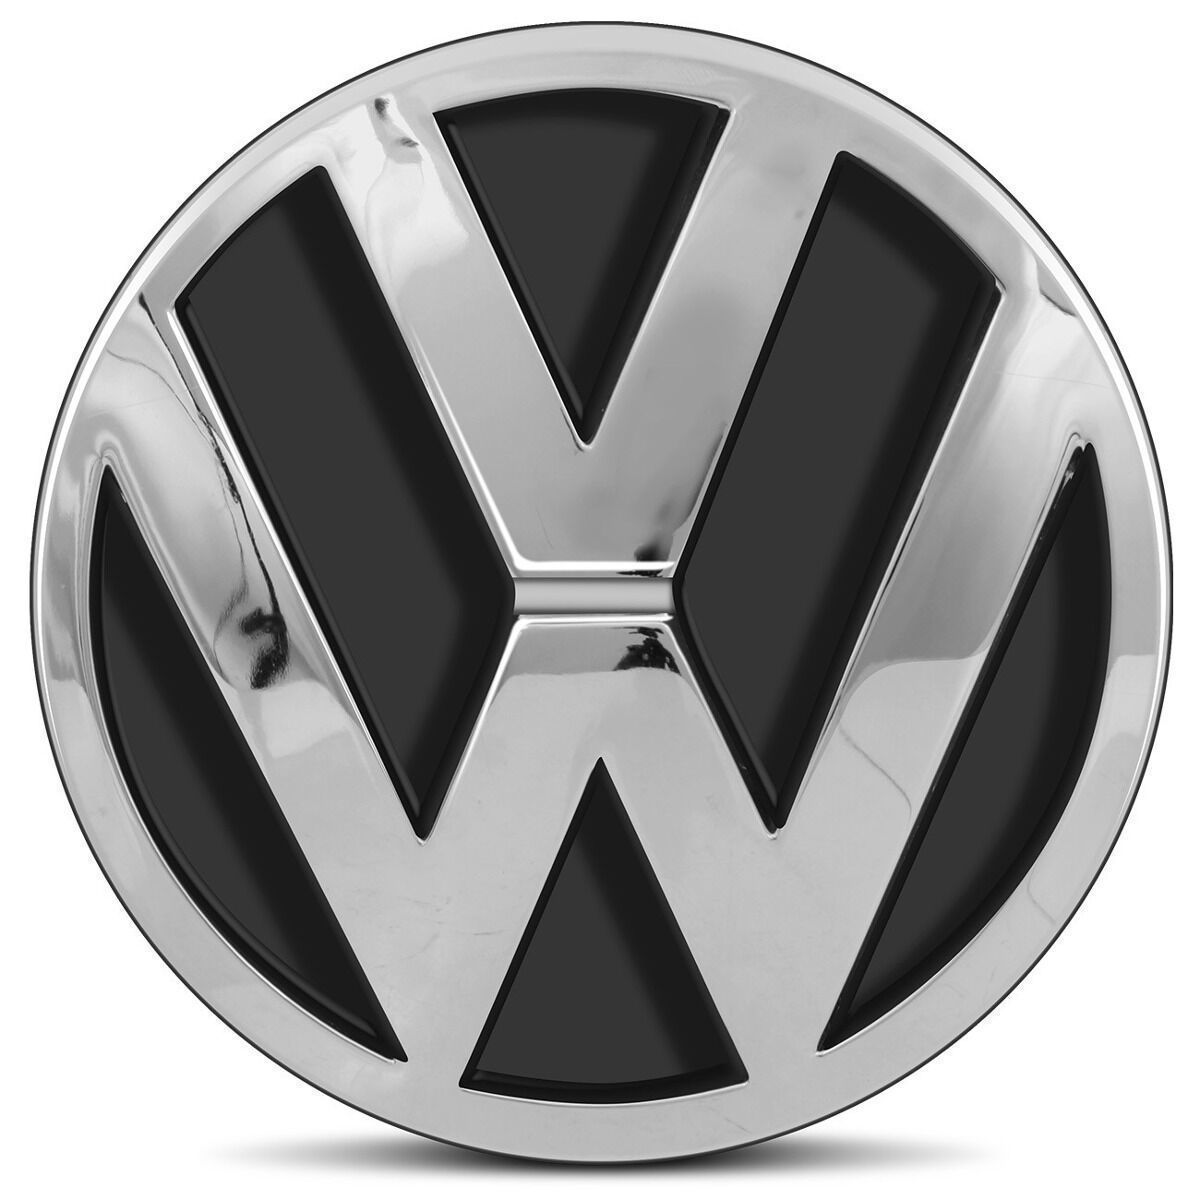 エンブレム ＊アウトレット品＊ 182mm VW Volkswagen フォルクスワーゲン ロゴ フロント T2 バス ワゴン クラシックカー ヴィンテージ 空冷_画像2